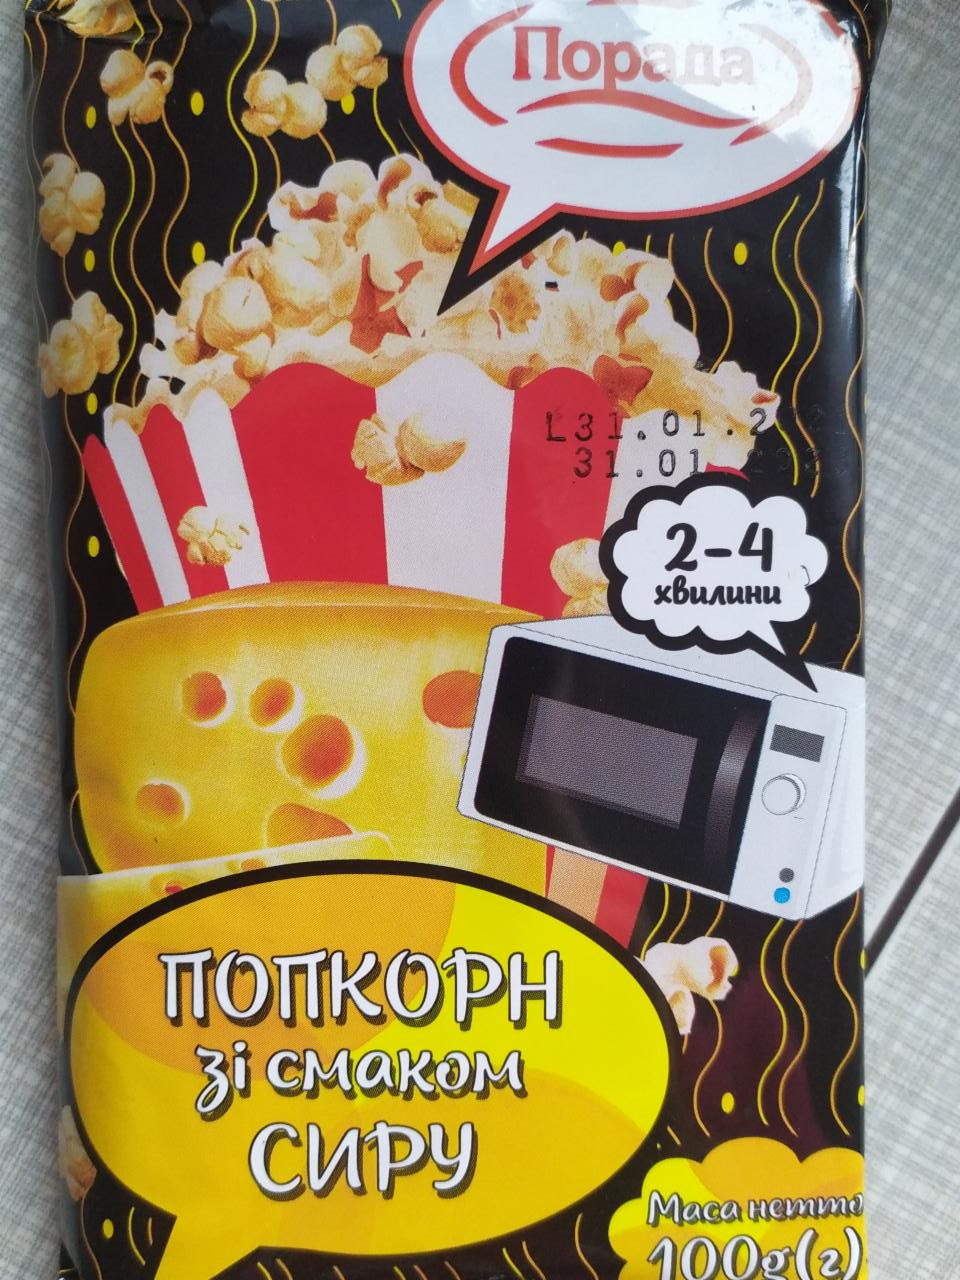 Фото - попкорн зі смаком сиру Порада